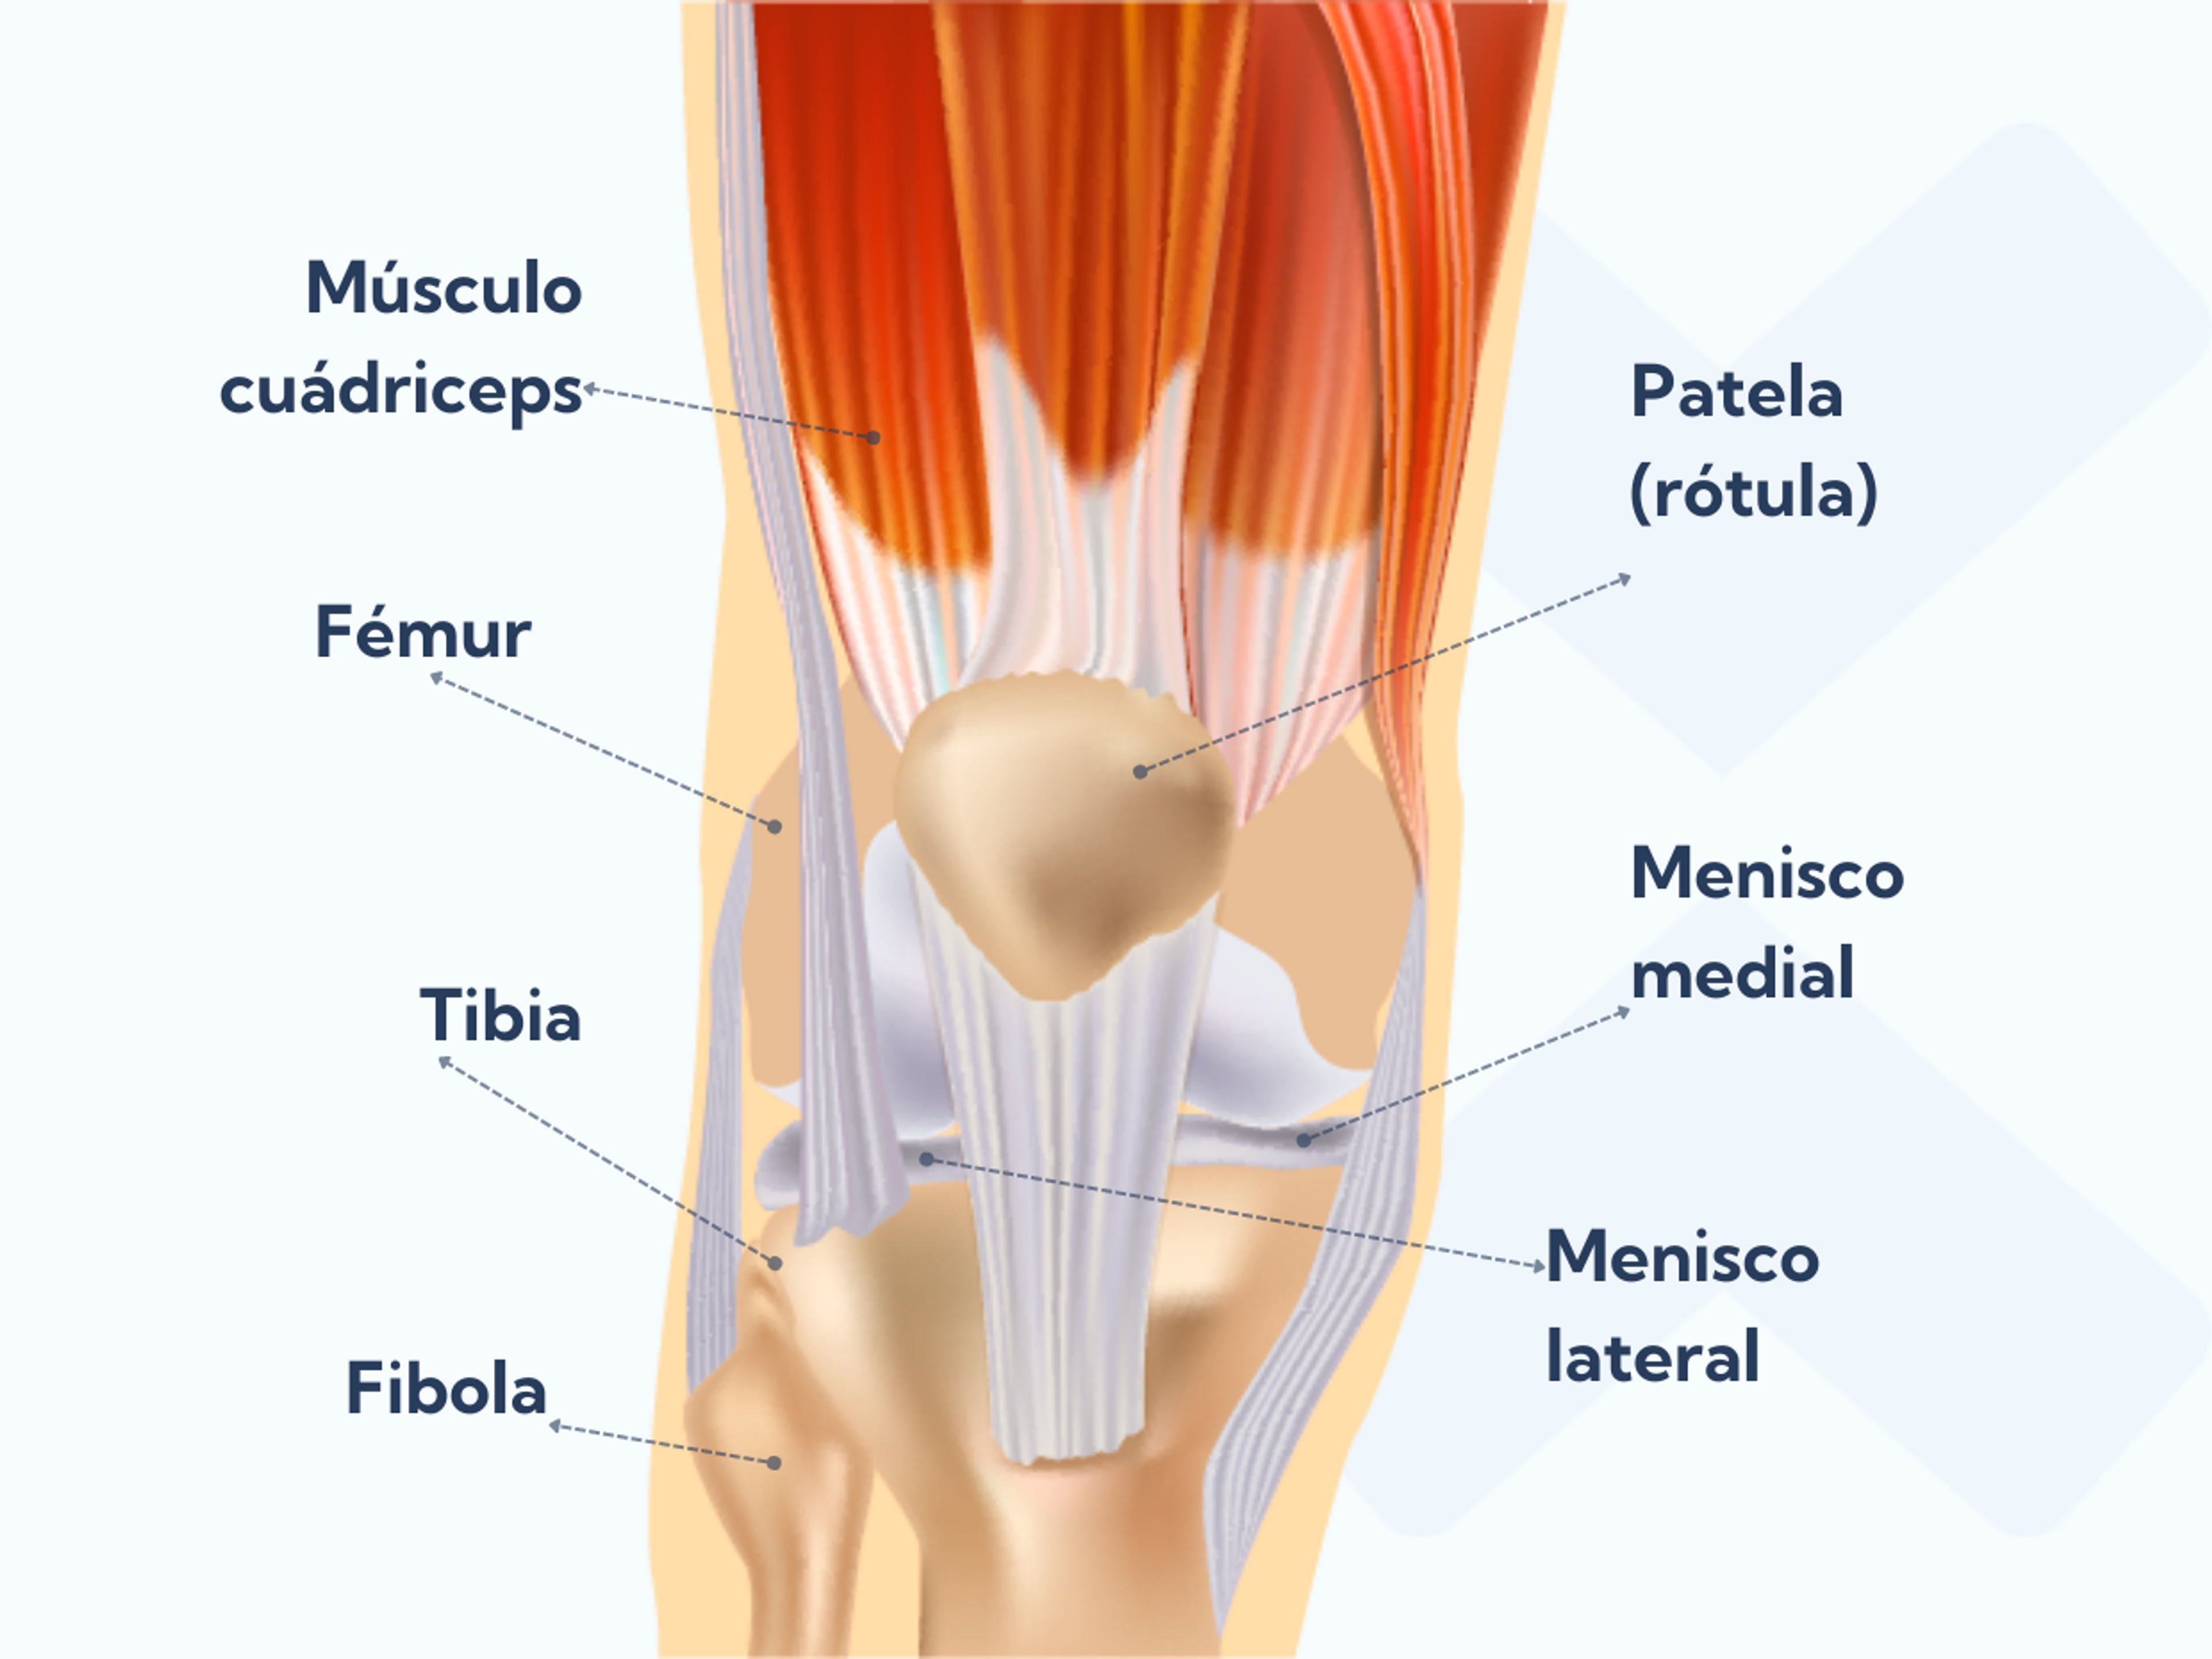 Sólo tendrás hinchazón en la rodilla después de sufrir un esguince si te lesionas una estructura que se encuentra dentro de la articulación de la rodilla.